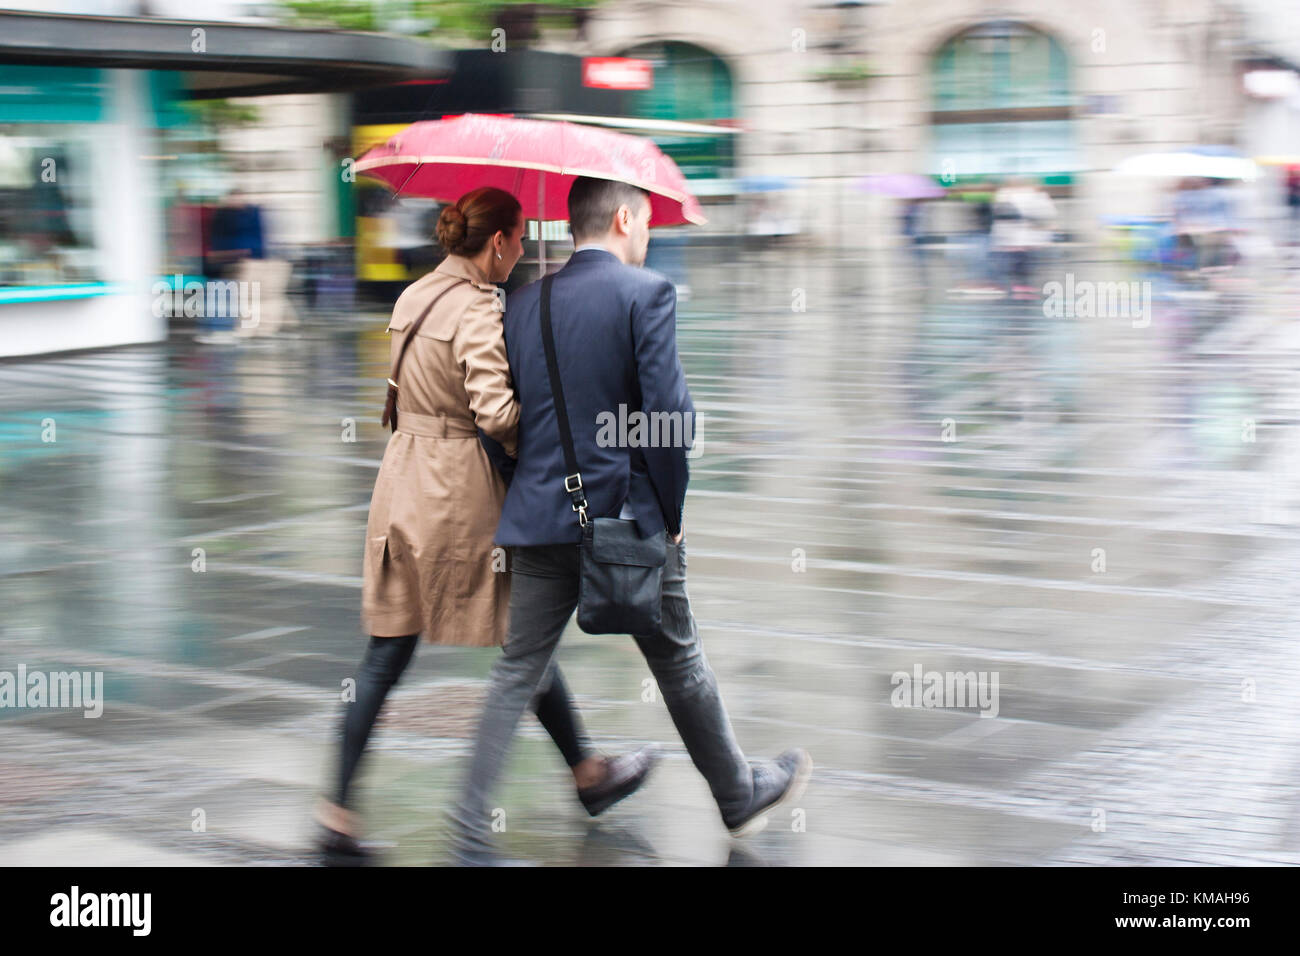 Belgrad, Serbien - Mai 5, 2017: Der junge Mann und die Frau zu Fuß in Eile unter dem Dach an regnerischen und blurry city street Stockfoto